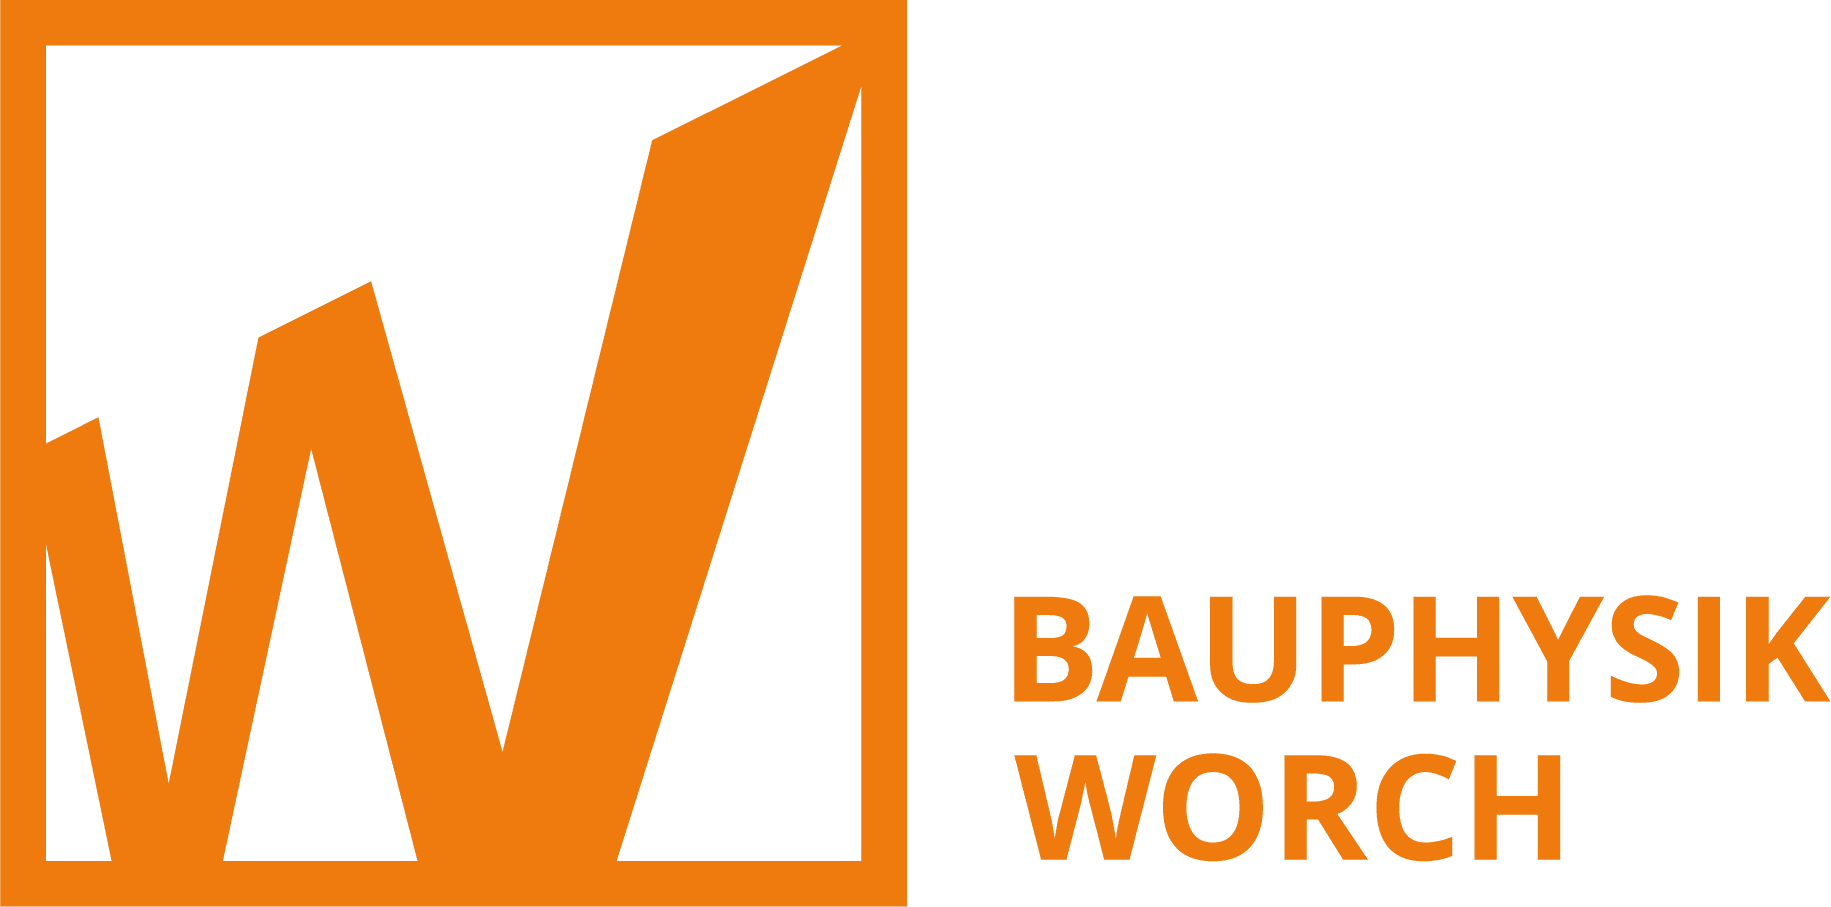 (c) Bauphysik-worch.de